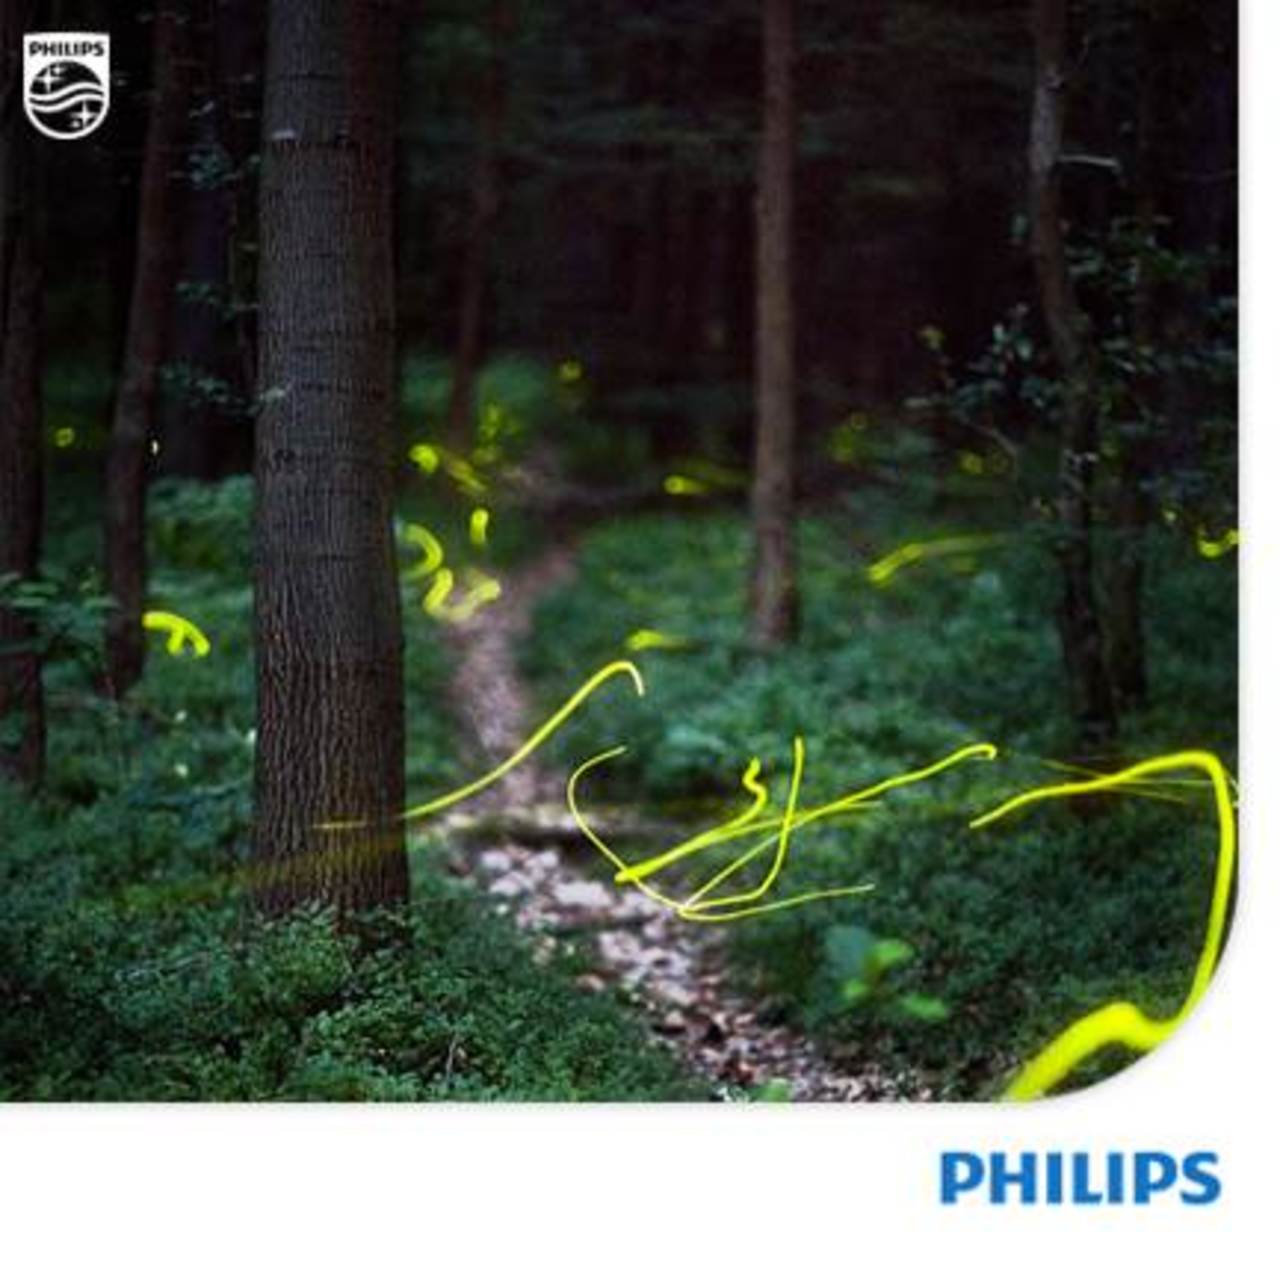 #LightArt Here’s a picture by Kristian Cvecek featuring long exposure shot of fireflies. http://t.co/qDh8Q3Aq9a